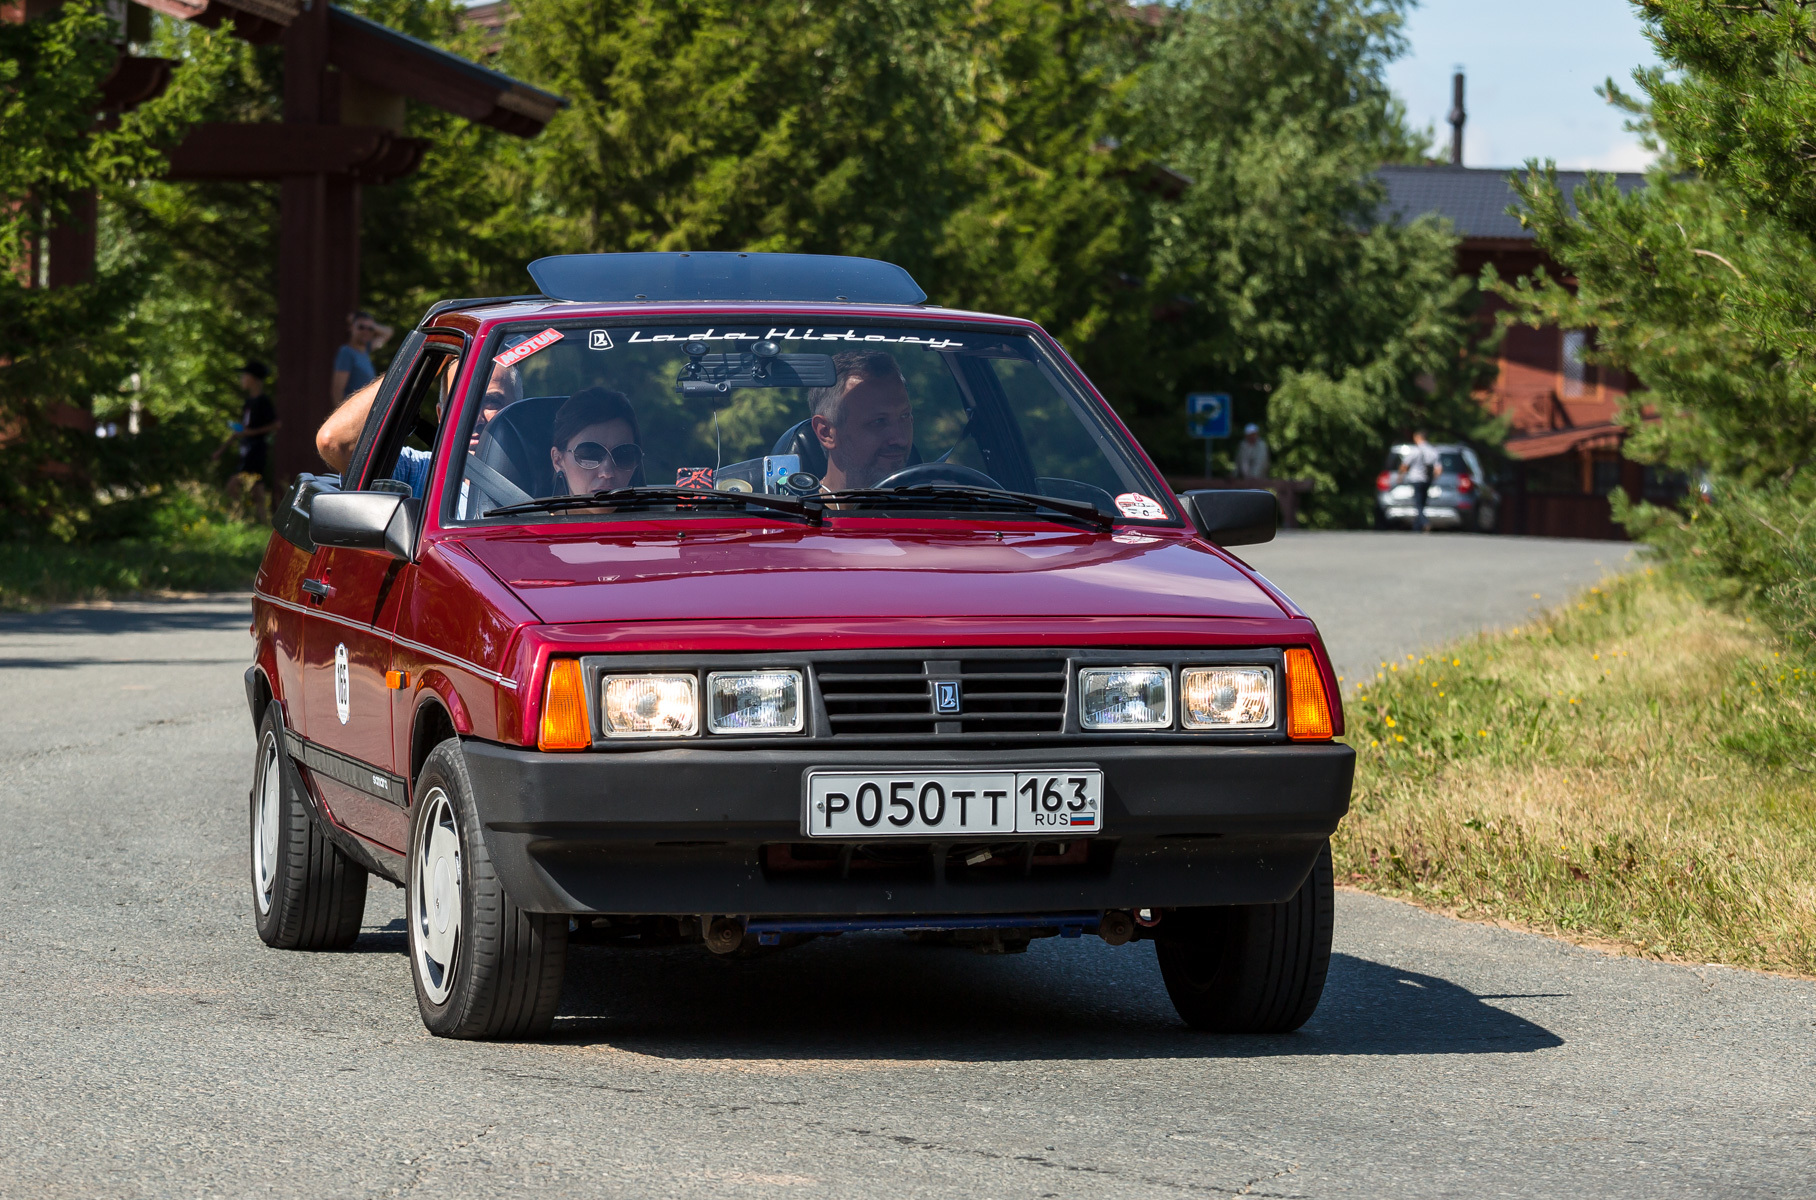 Реэкспортная Lada Samara Fun с кузовом ландо на базе «восьмёрки» 1991 года выпуска. Из особенностей — кожаный салон и четырёхфарная немецкая оптика.